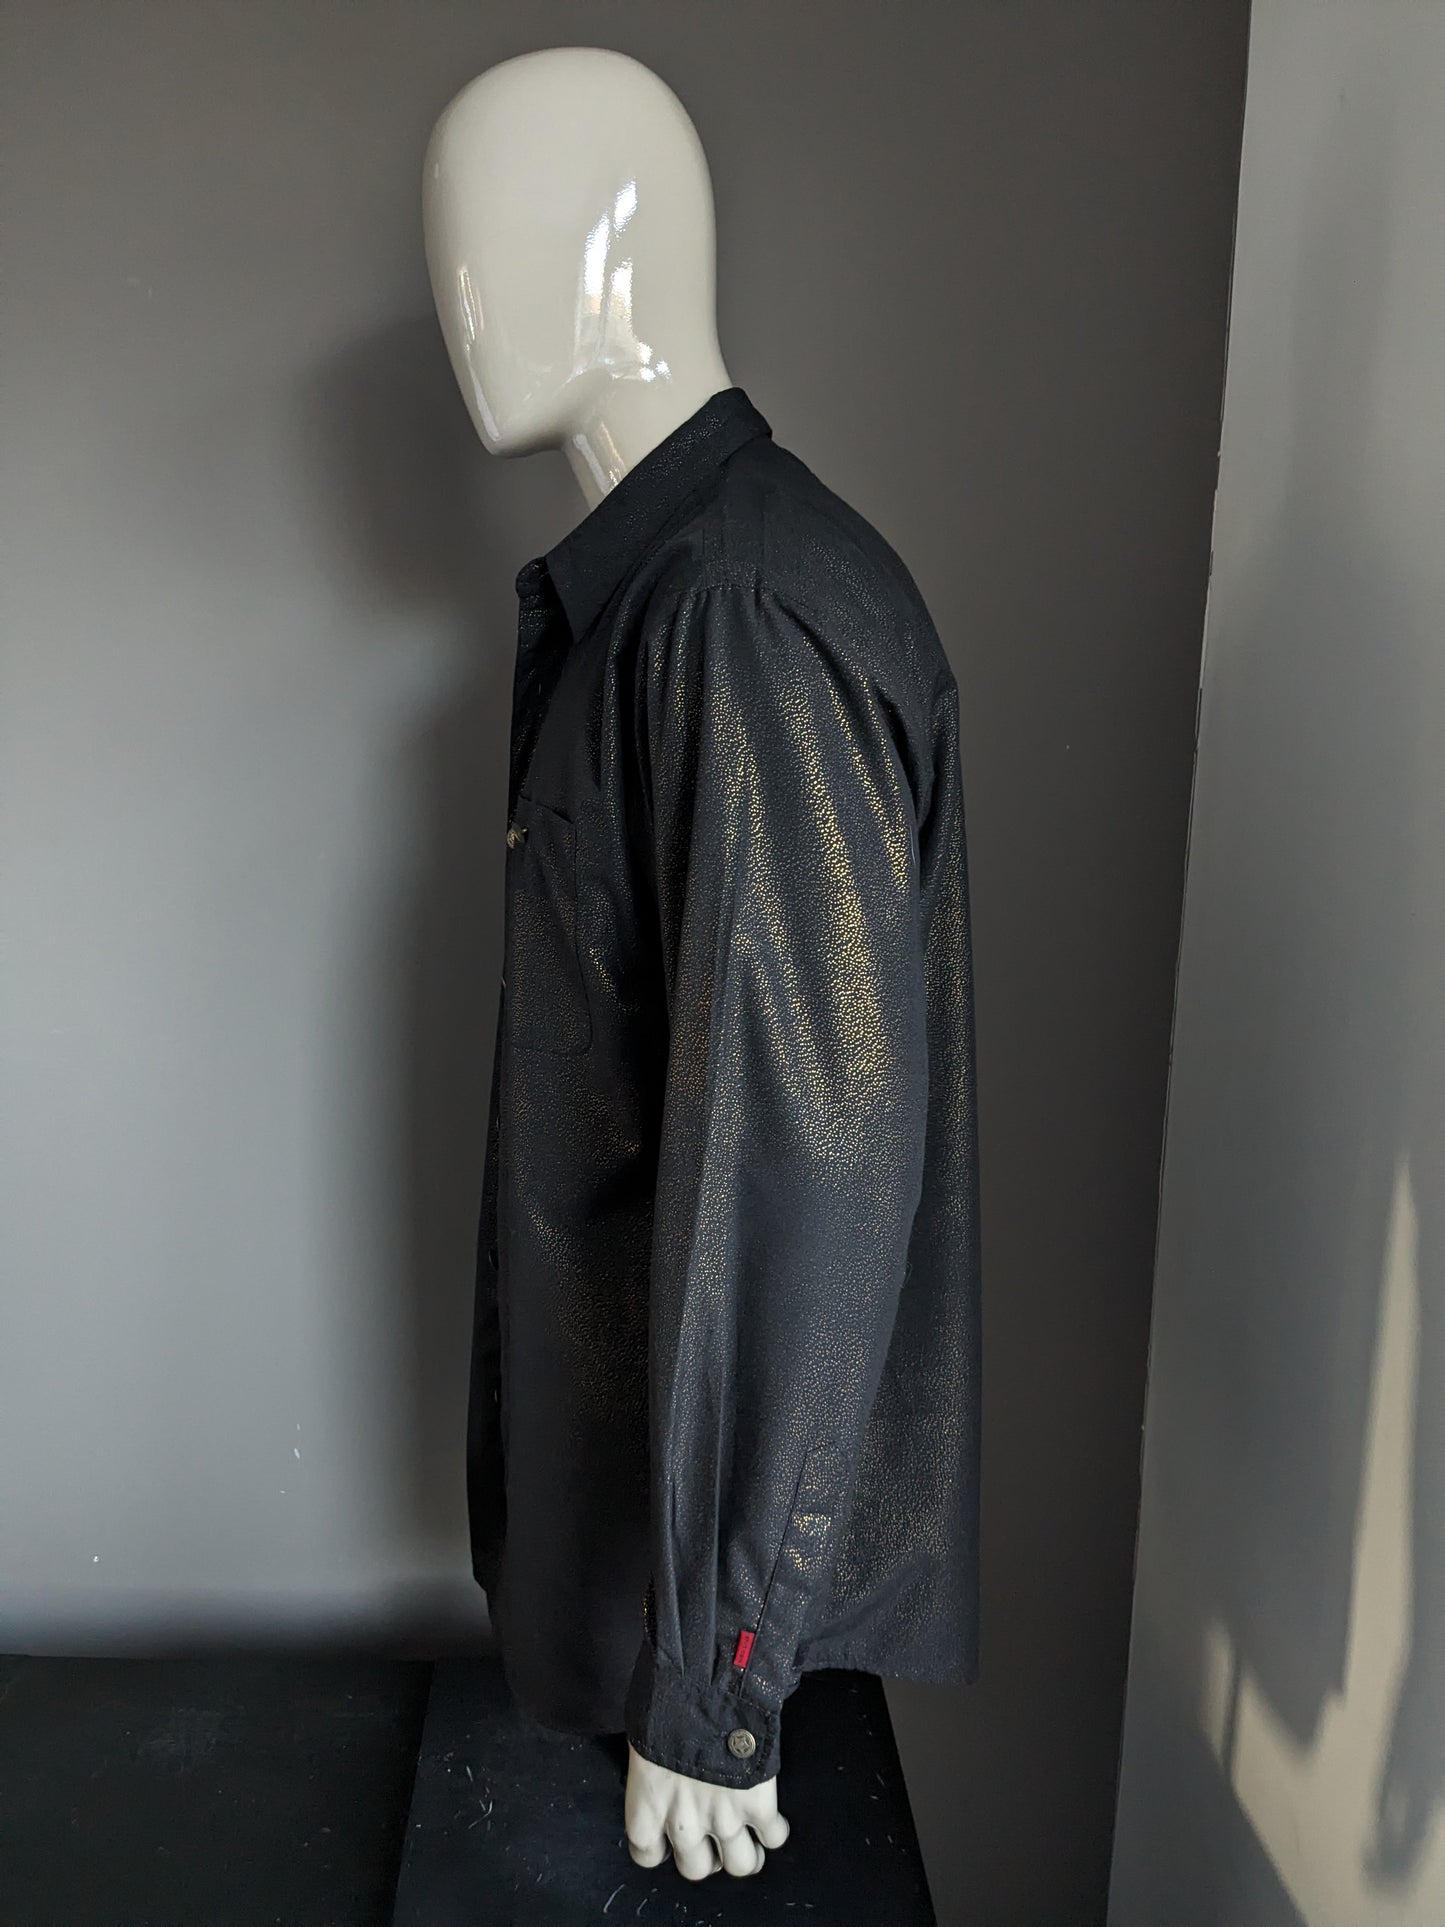 Shirt.com overhemd. Zwart Goudkleurig gestippeld. Mooie knopen. Maat XL / XXL-2XL.